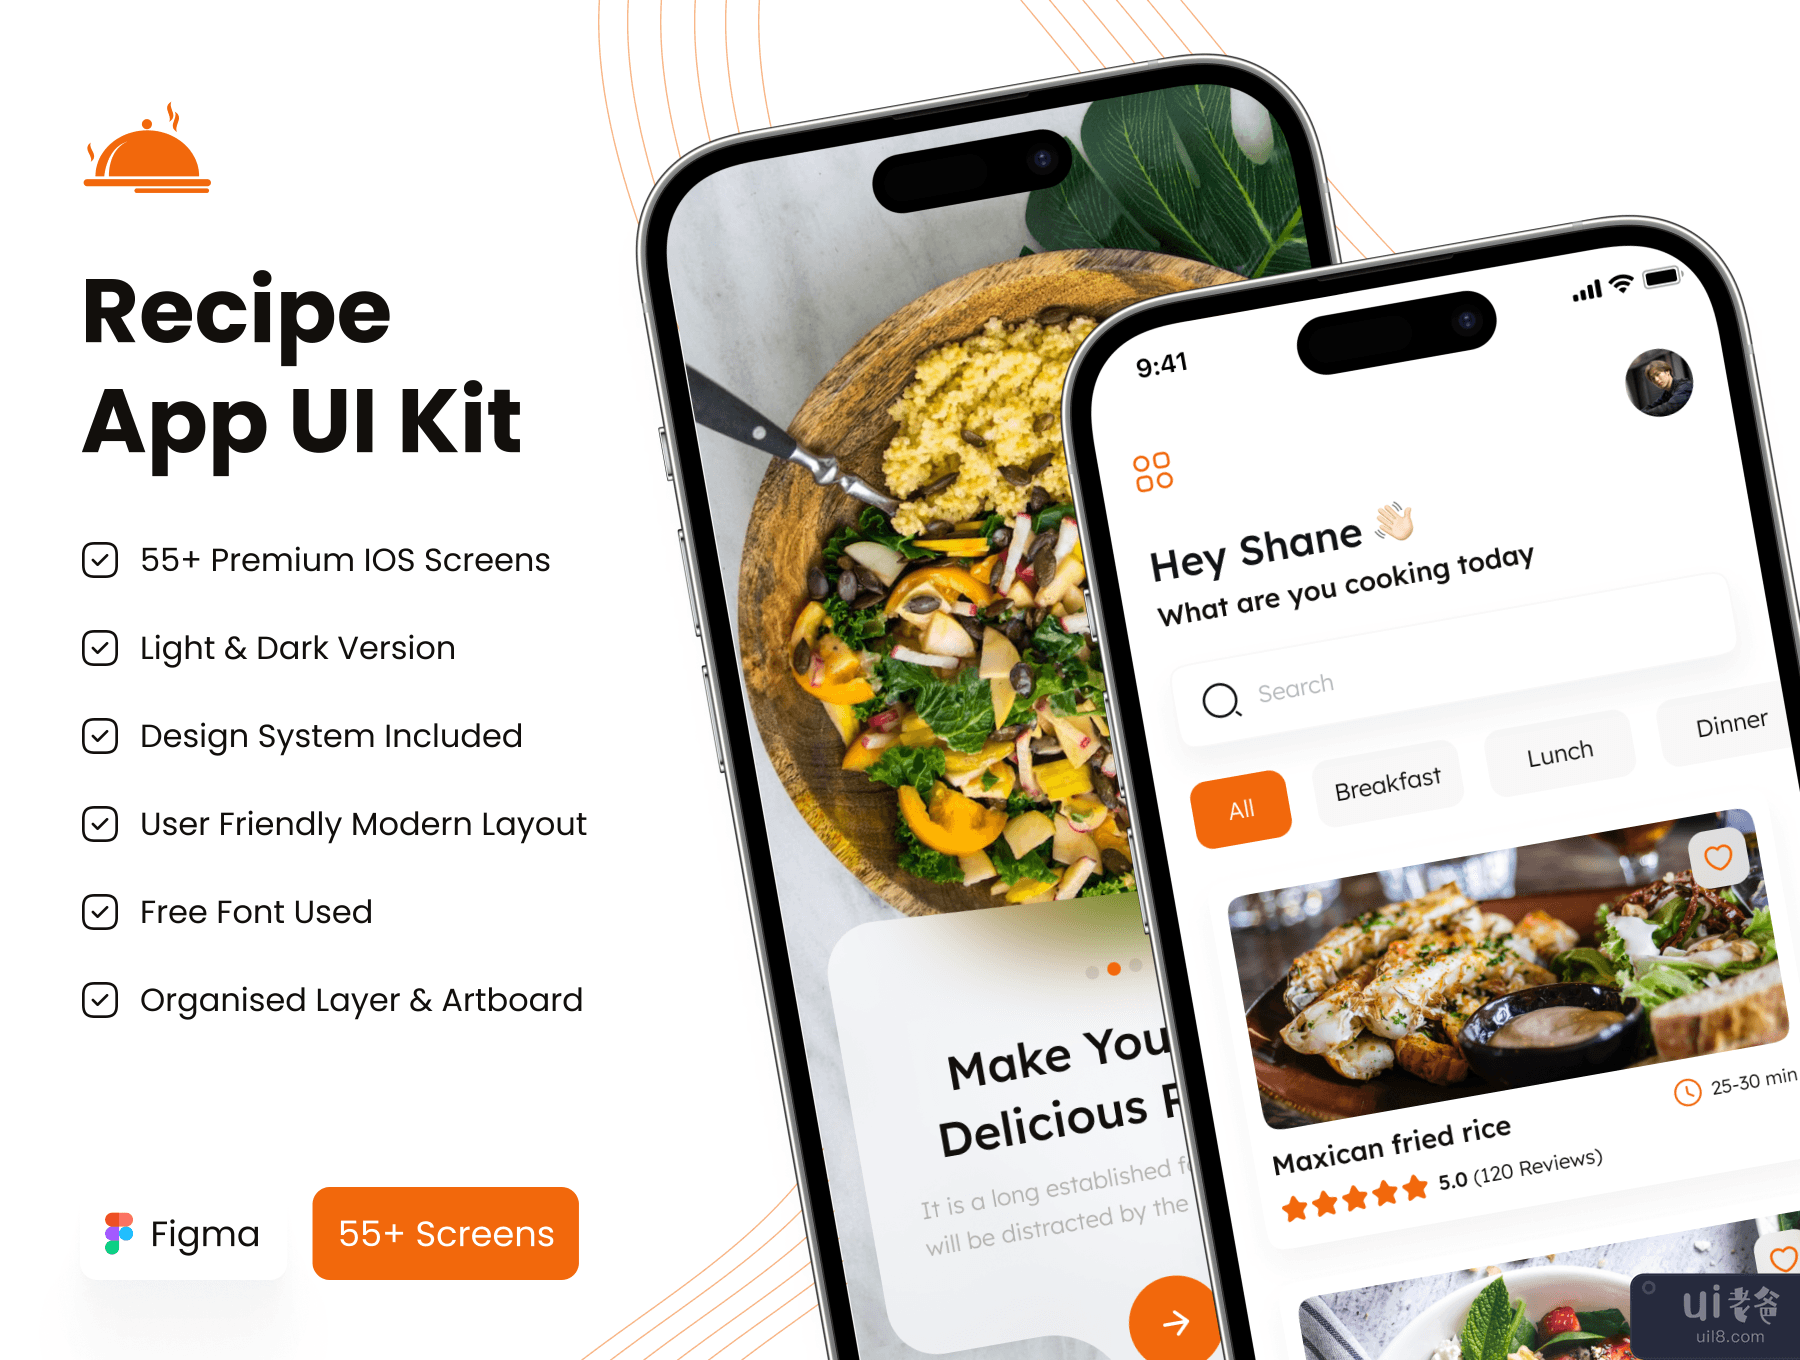 食谱应用程序 UI 工具包 (Recipe App UI Kit)插图7